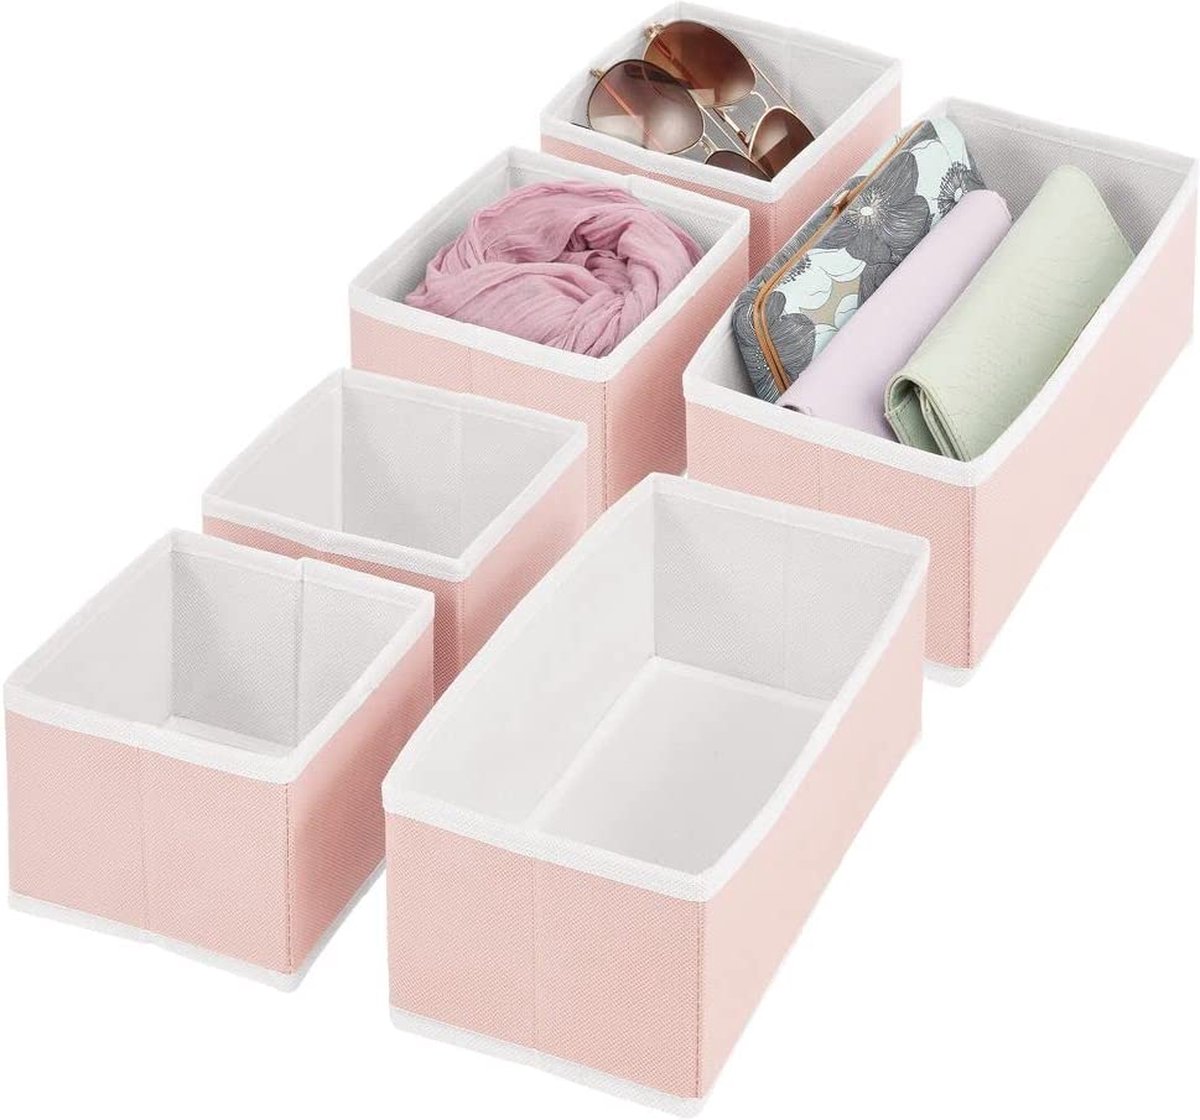 mDesign Set van 6 kastopbergdozen – stoffen opbergkasten met getextureerde print voor kleding en accessoires – Slaapkameropbergkasten voor ladeorganisatie – roze/wit